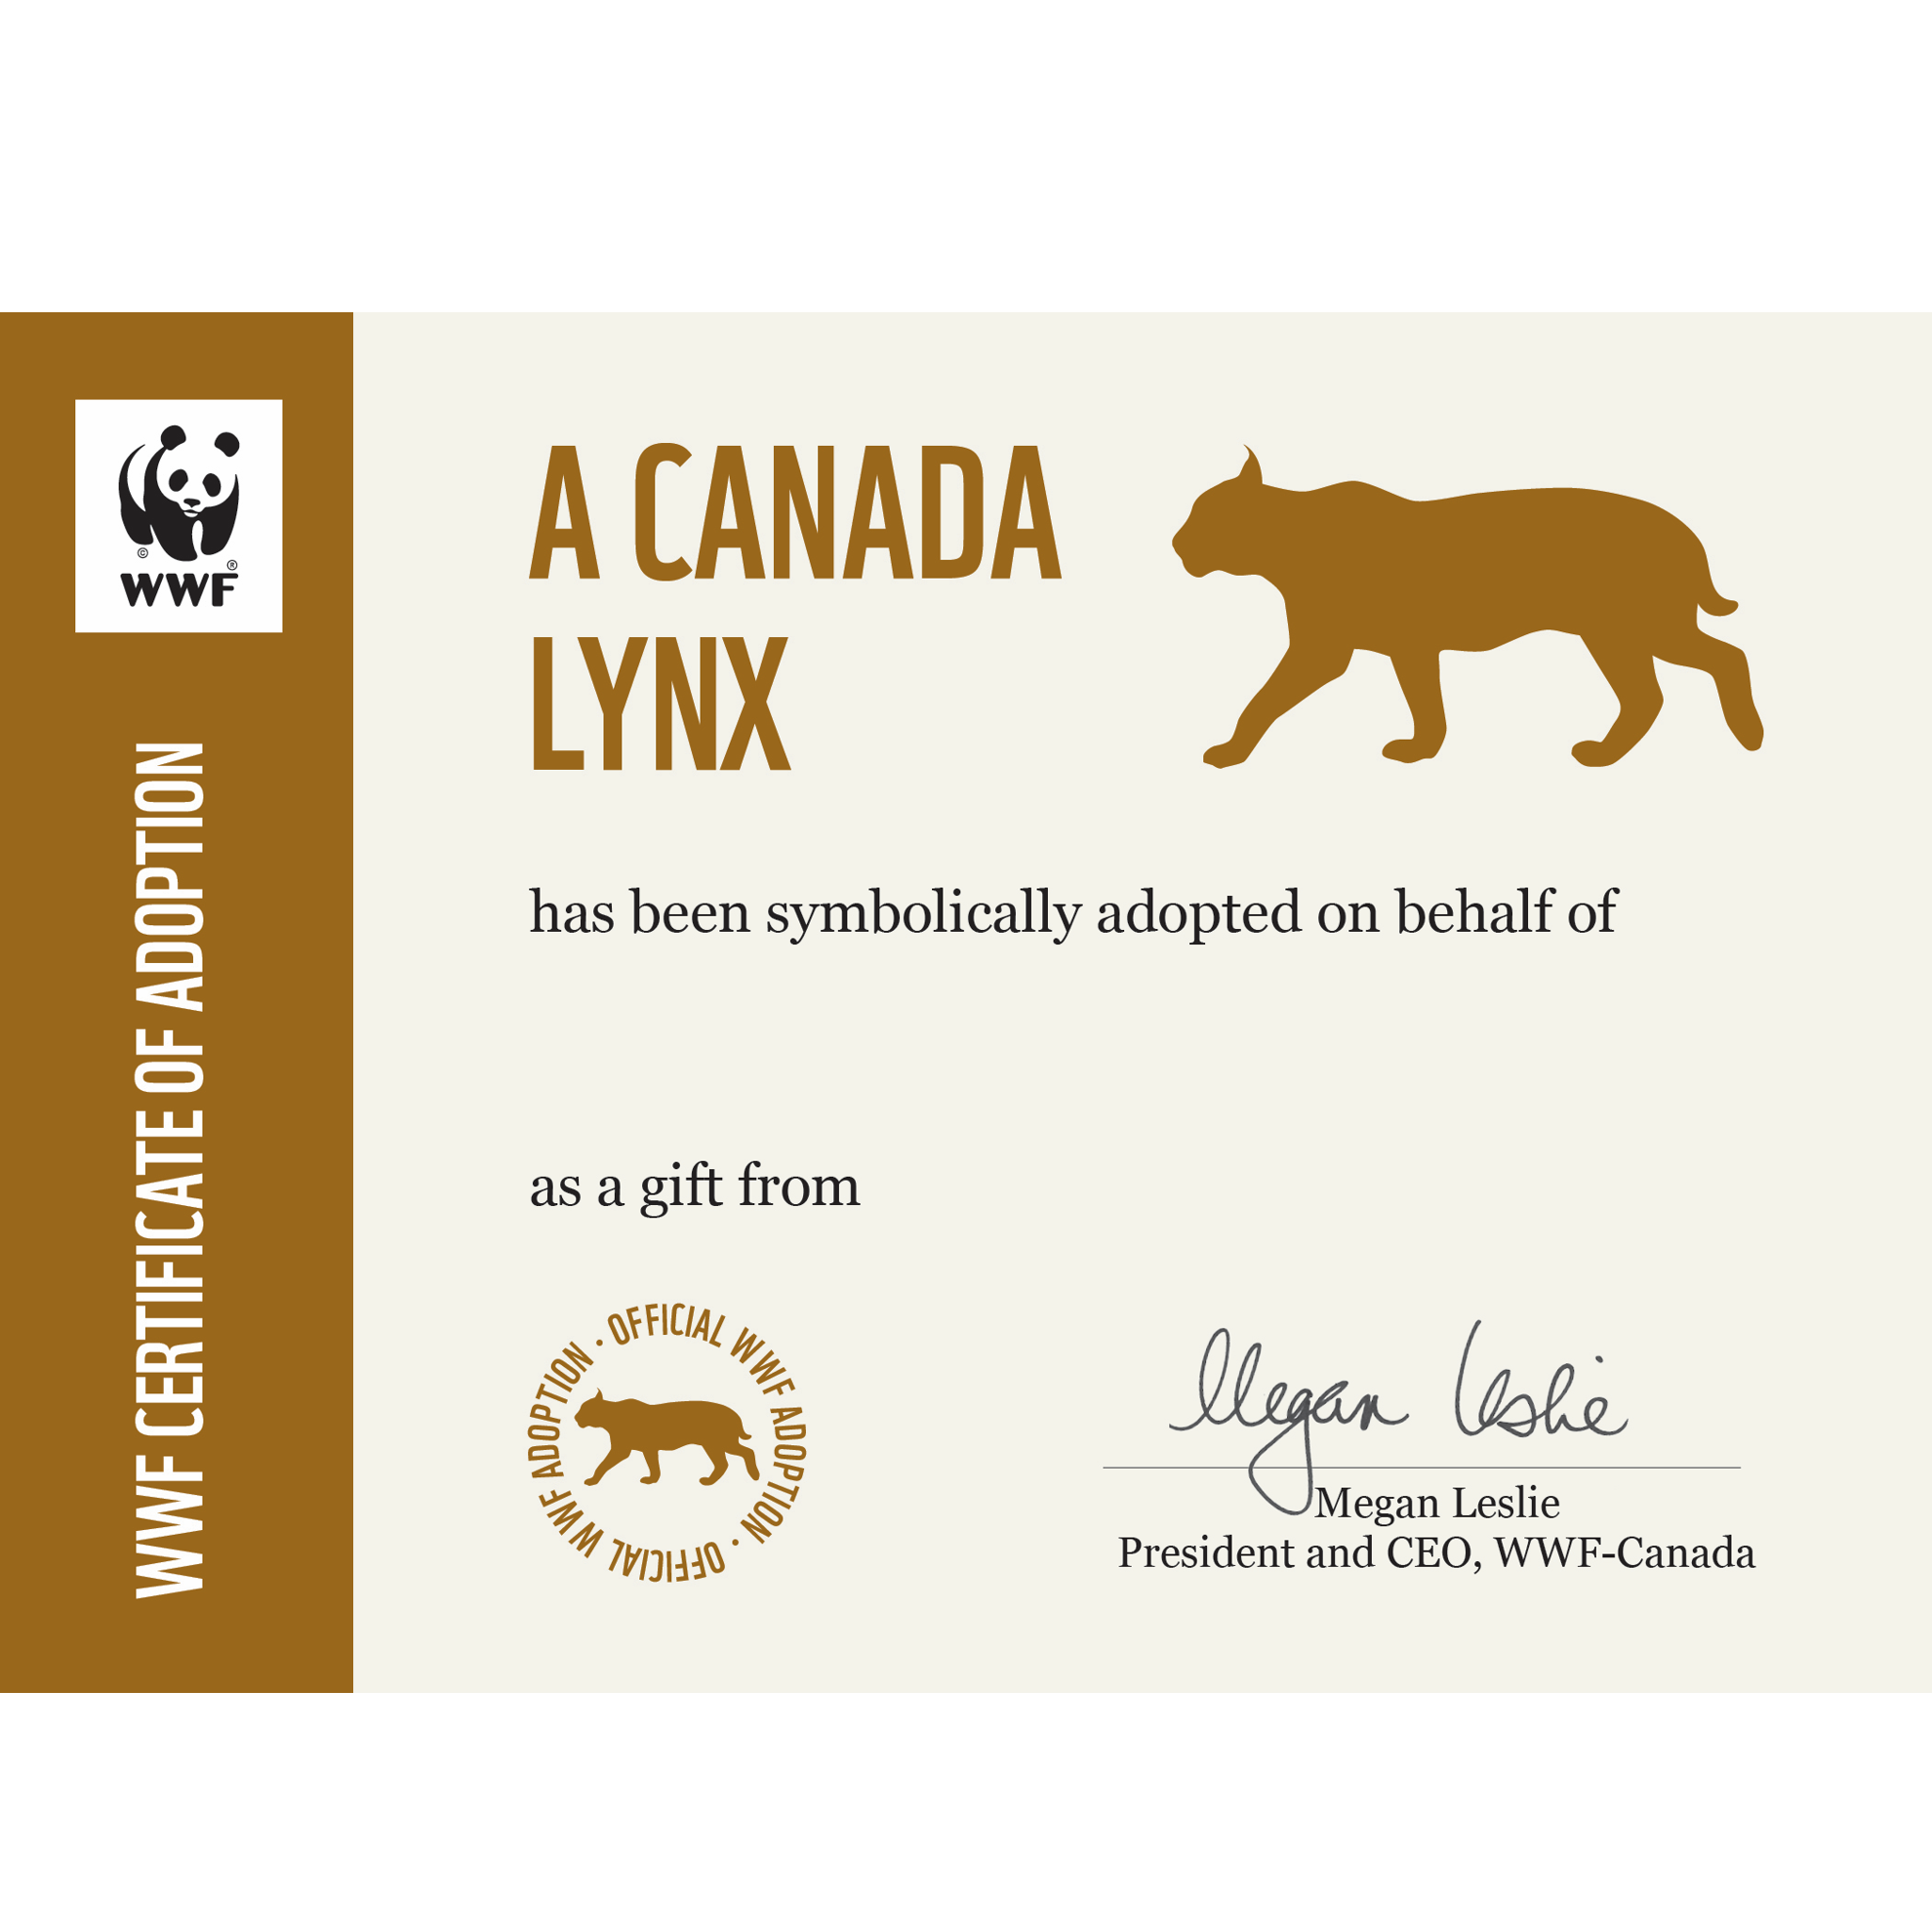 Canada lynx adoption card - WWF-Canada